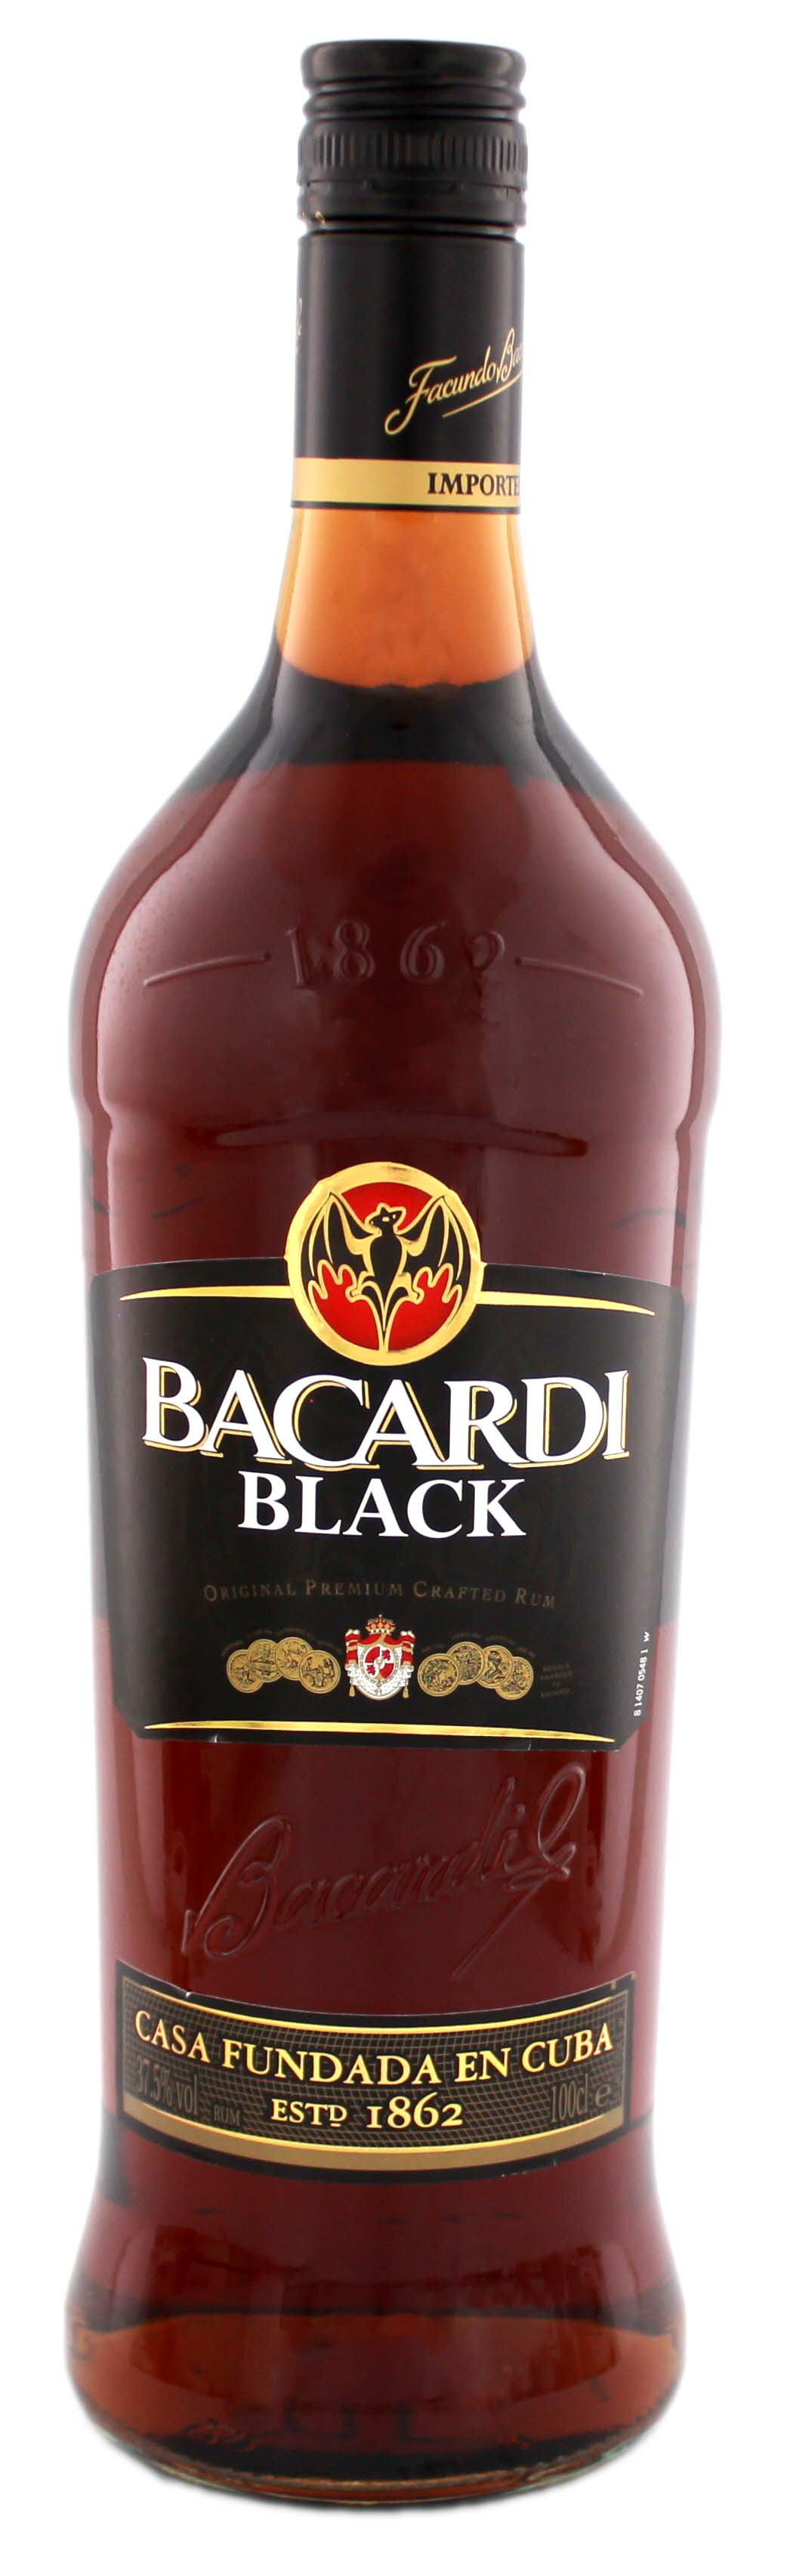 Бакарди ром 1 литр. Бакарди Блэк 1 литр. Бакарди Блэк 1 литр оригинал. Бакарди Блэк Original Premium Crafted rum. Бакарди темный Ром 1 литр.